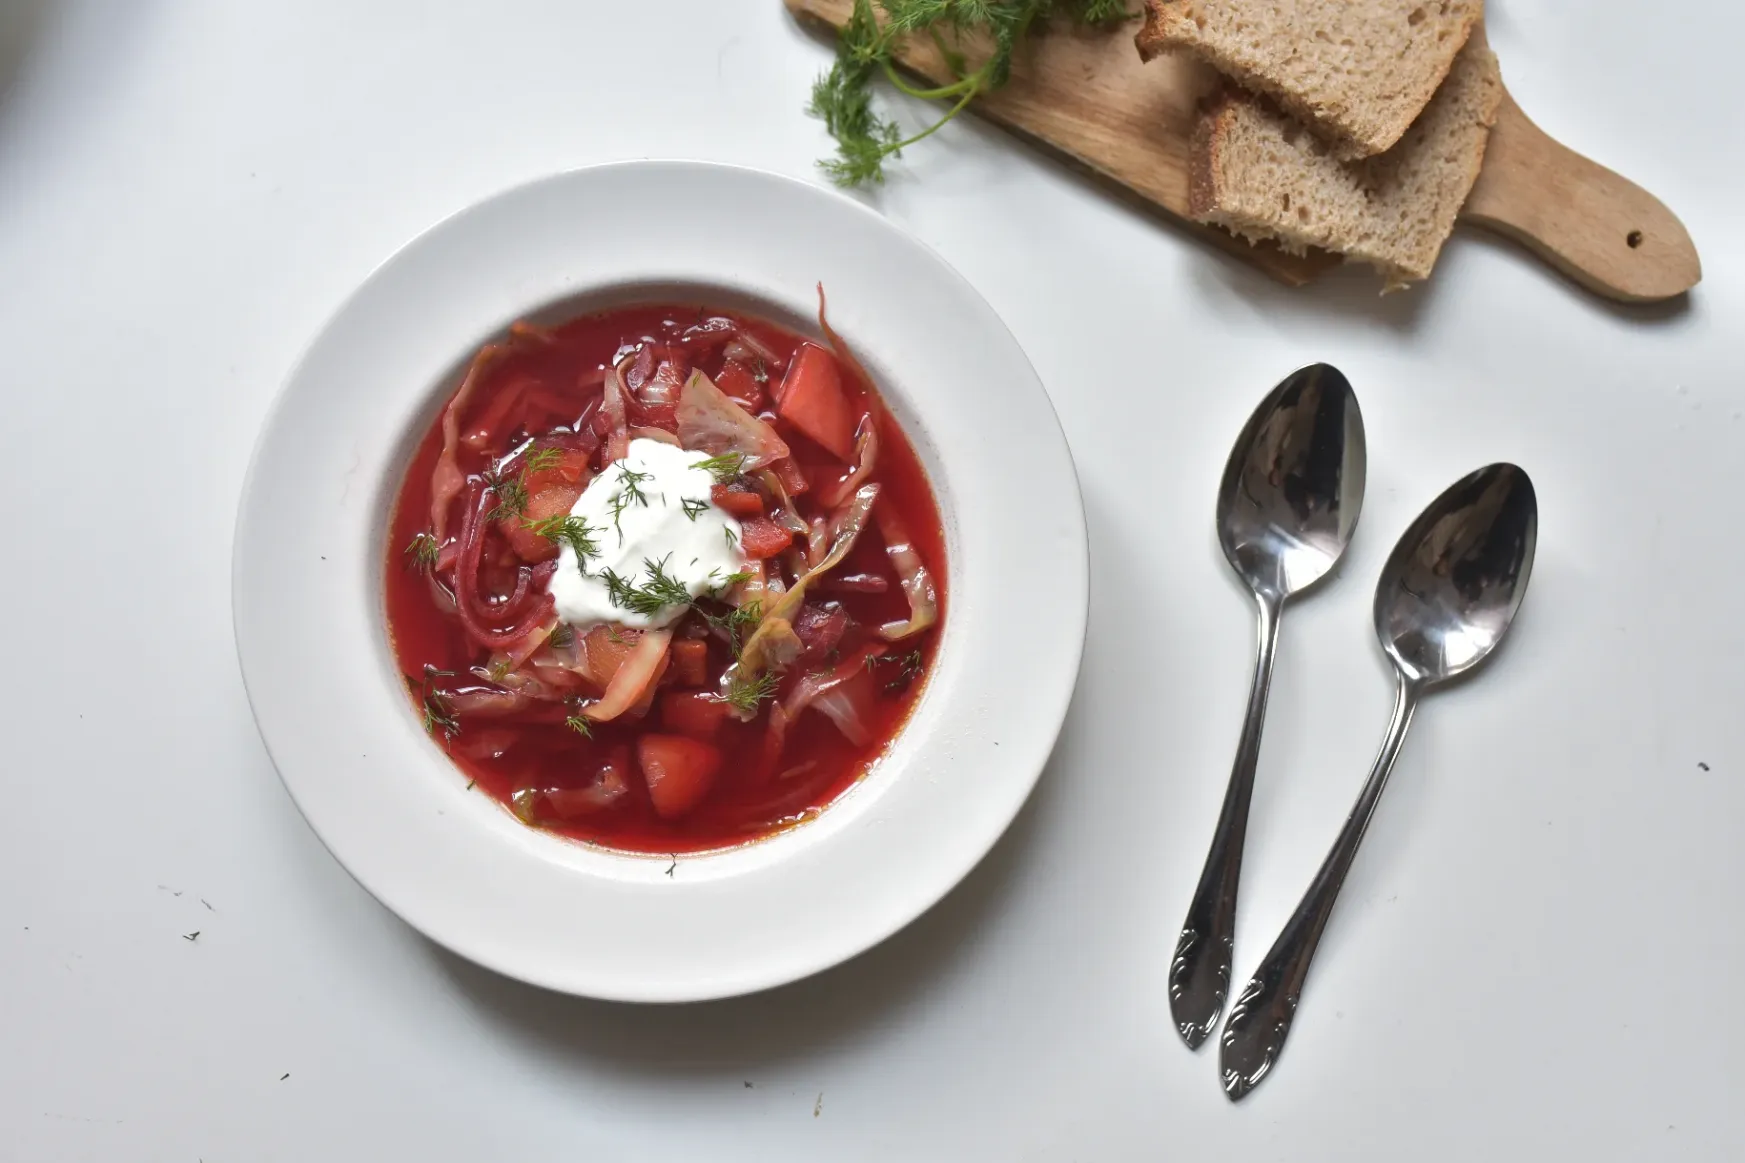 A világ leveseinek legjobbjai közé tartozik, mi mégis alig esszük: a borscs